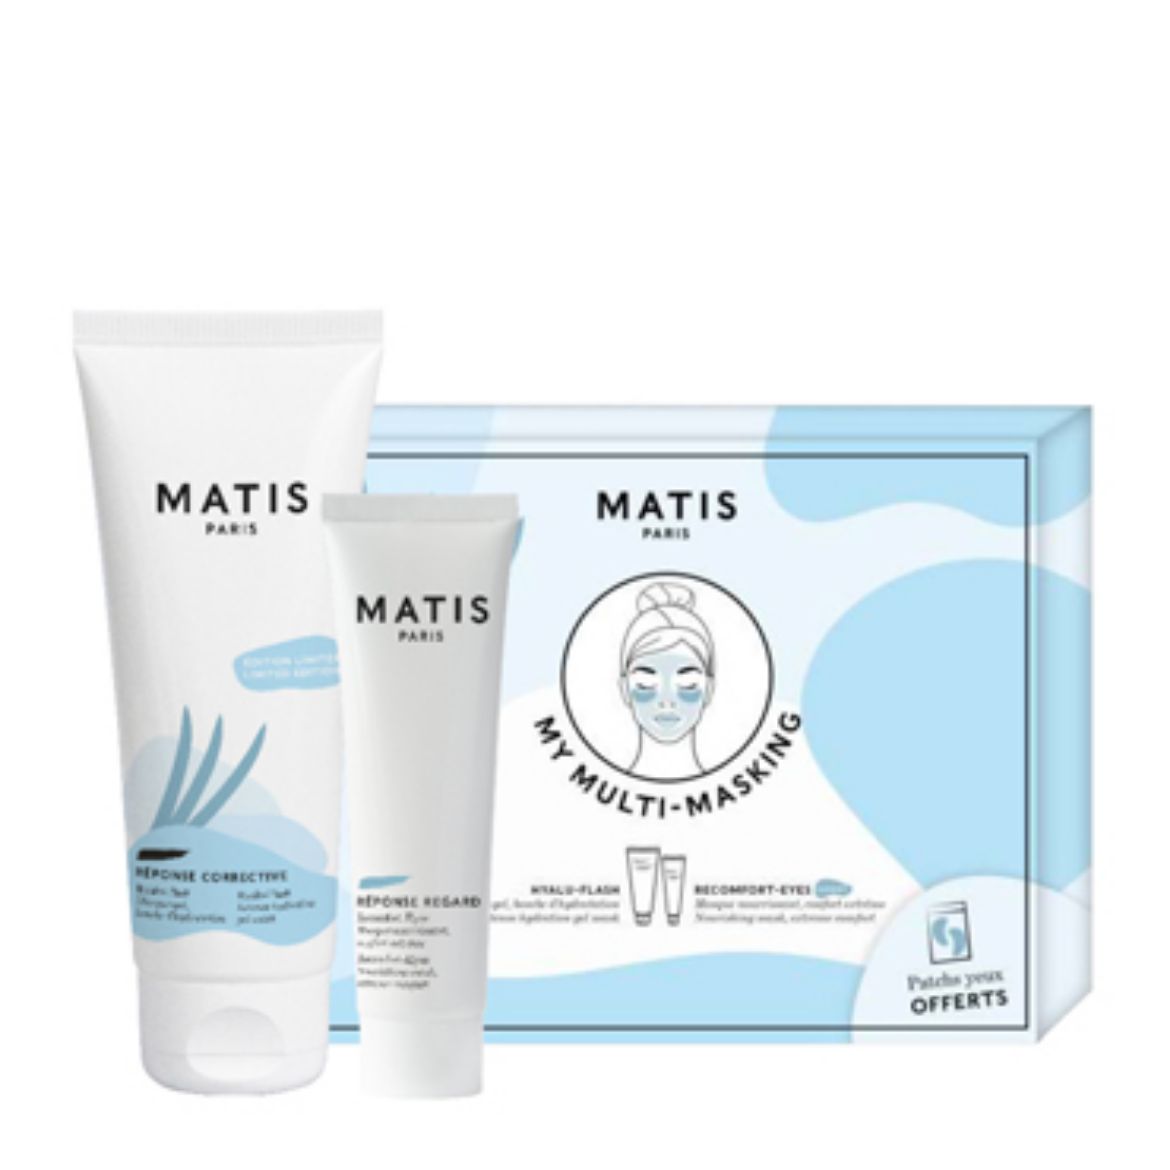 Bild von Matis Multi-Masking Kit